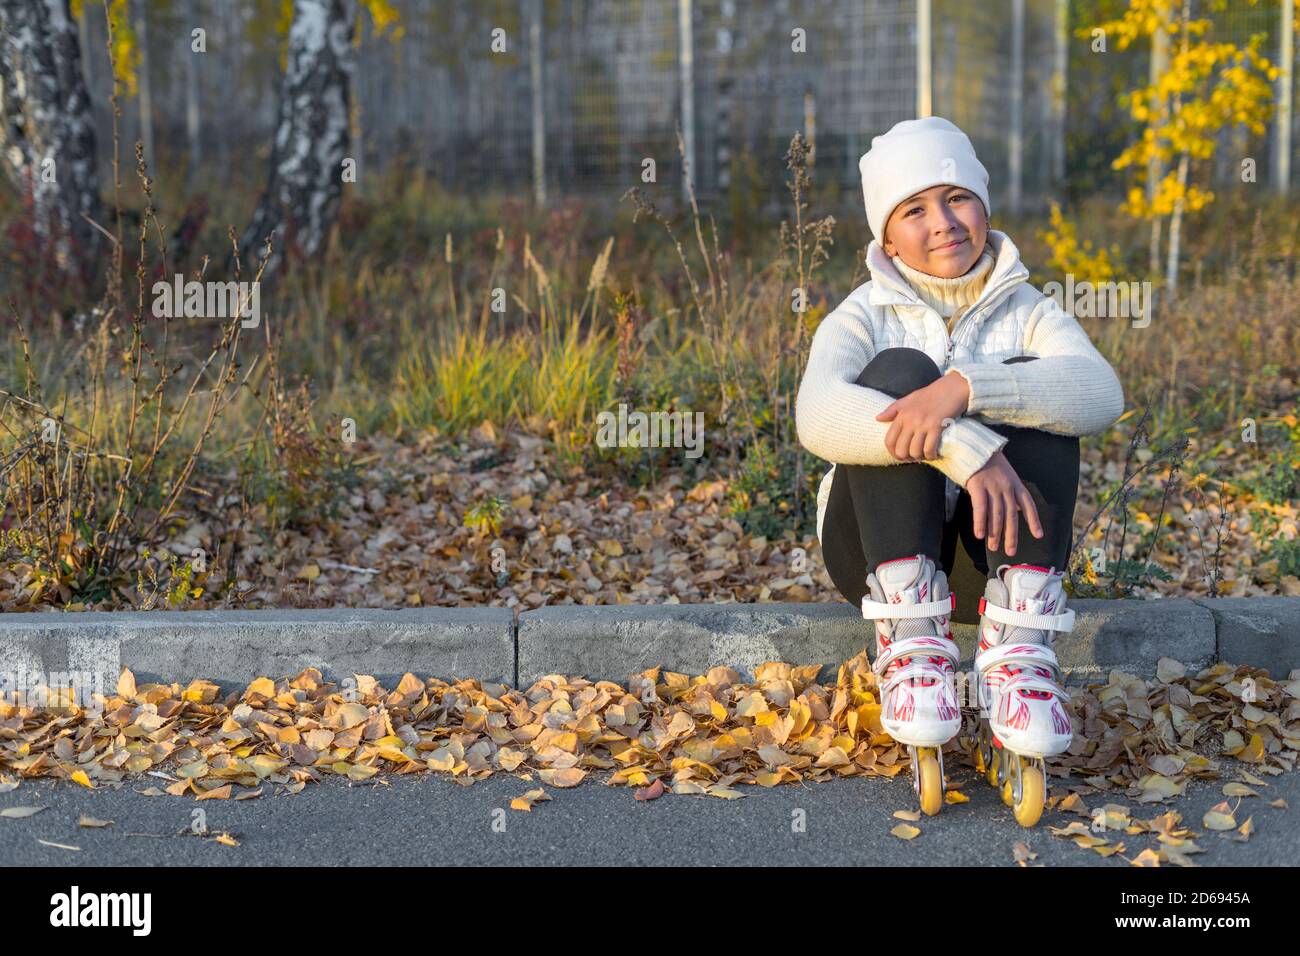 Une fille de patins à roulettes est assise sur un trottoir en béton au parc. Un jeune patineur de figure se repose. Soirée d'automne. La fille porte un chapeau blanc, un chandail, une veste et des leggings noirs. Copier l'espace. Banque D'Images